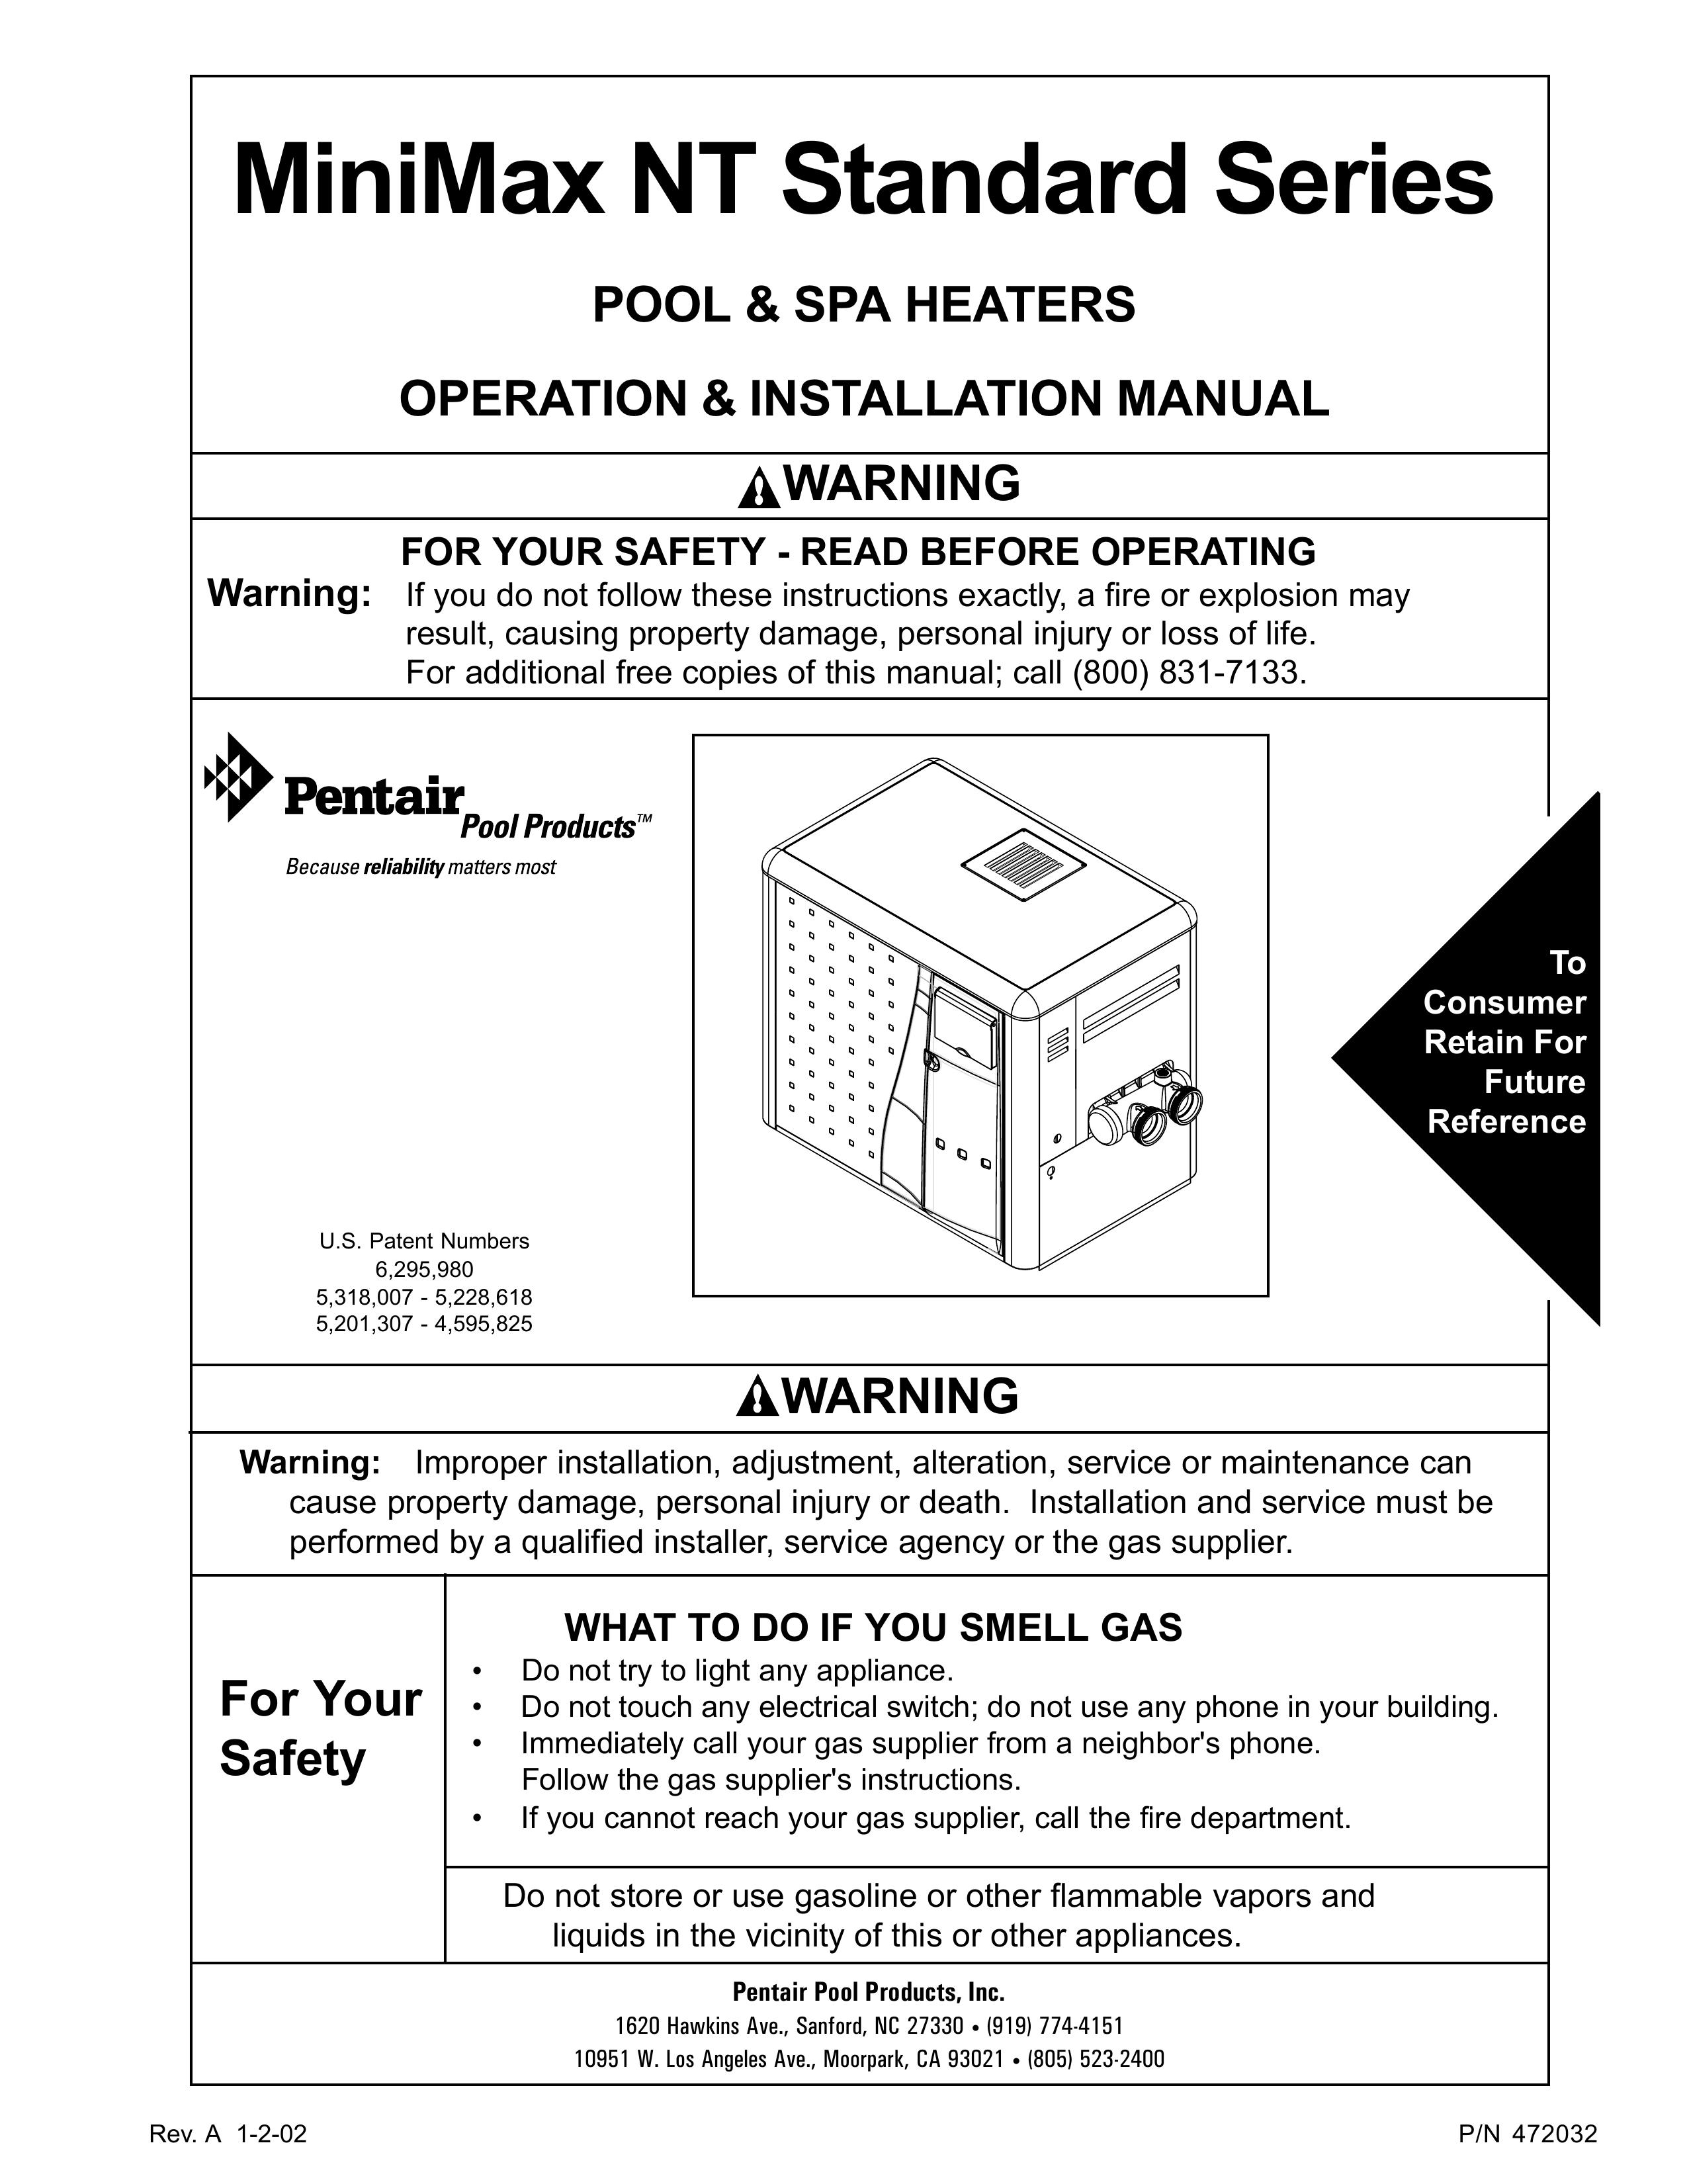 Pentair NT Standard Series Swimming Pool Heater User Manual